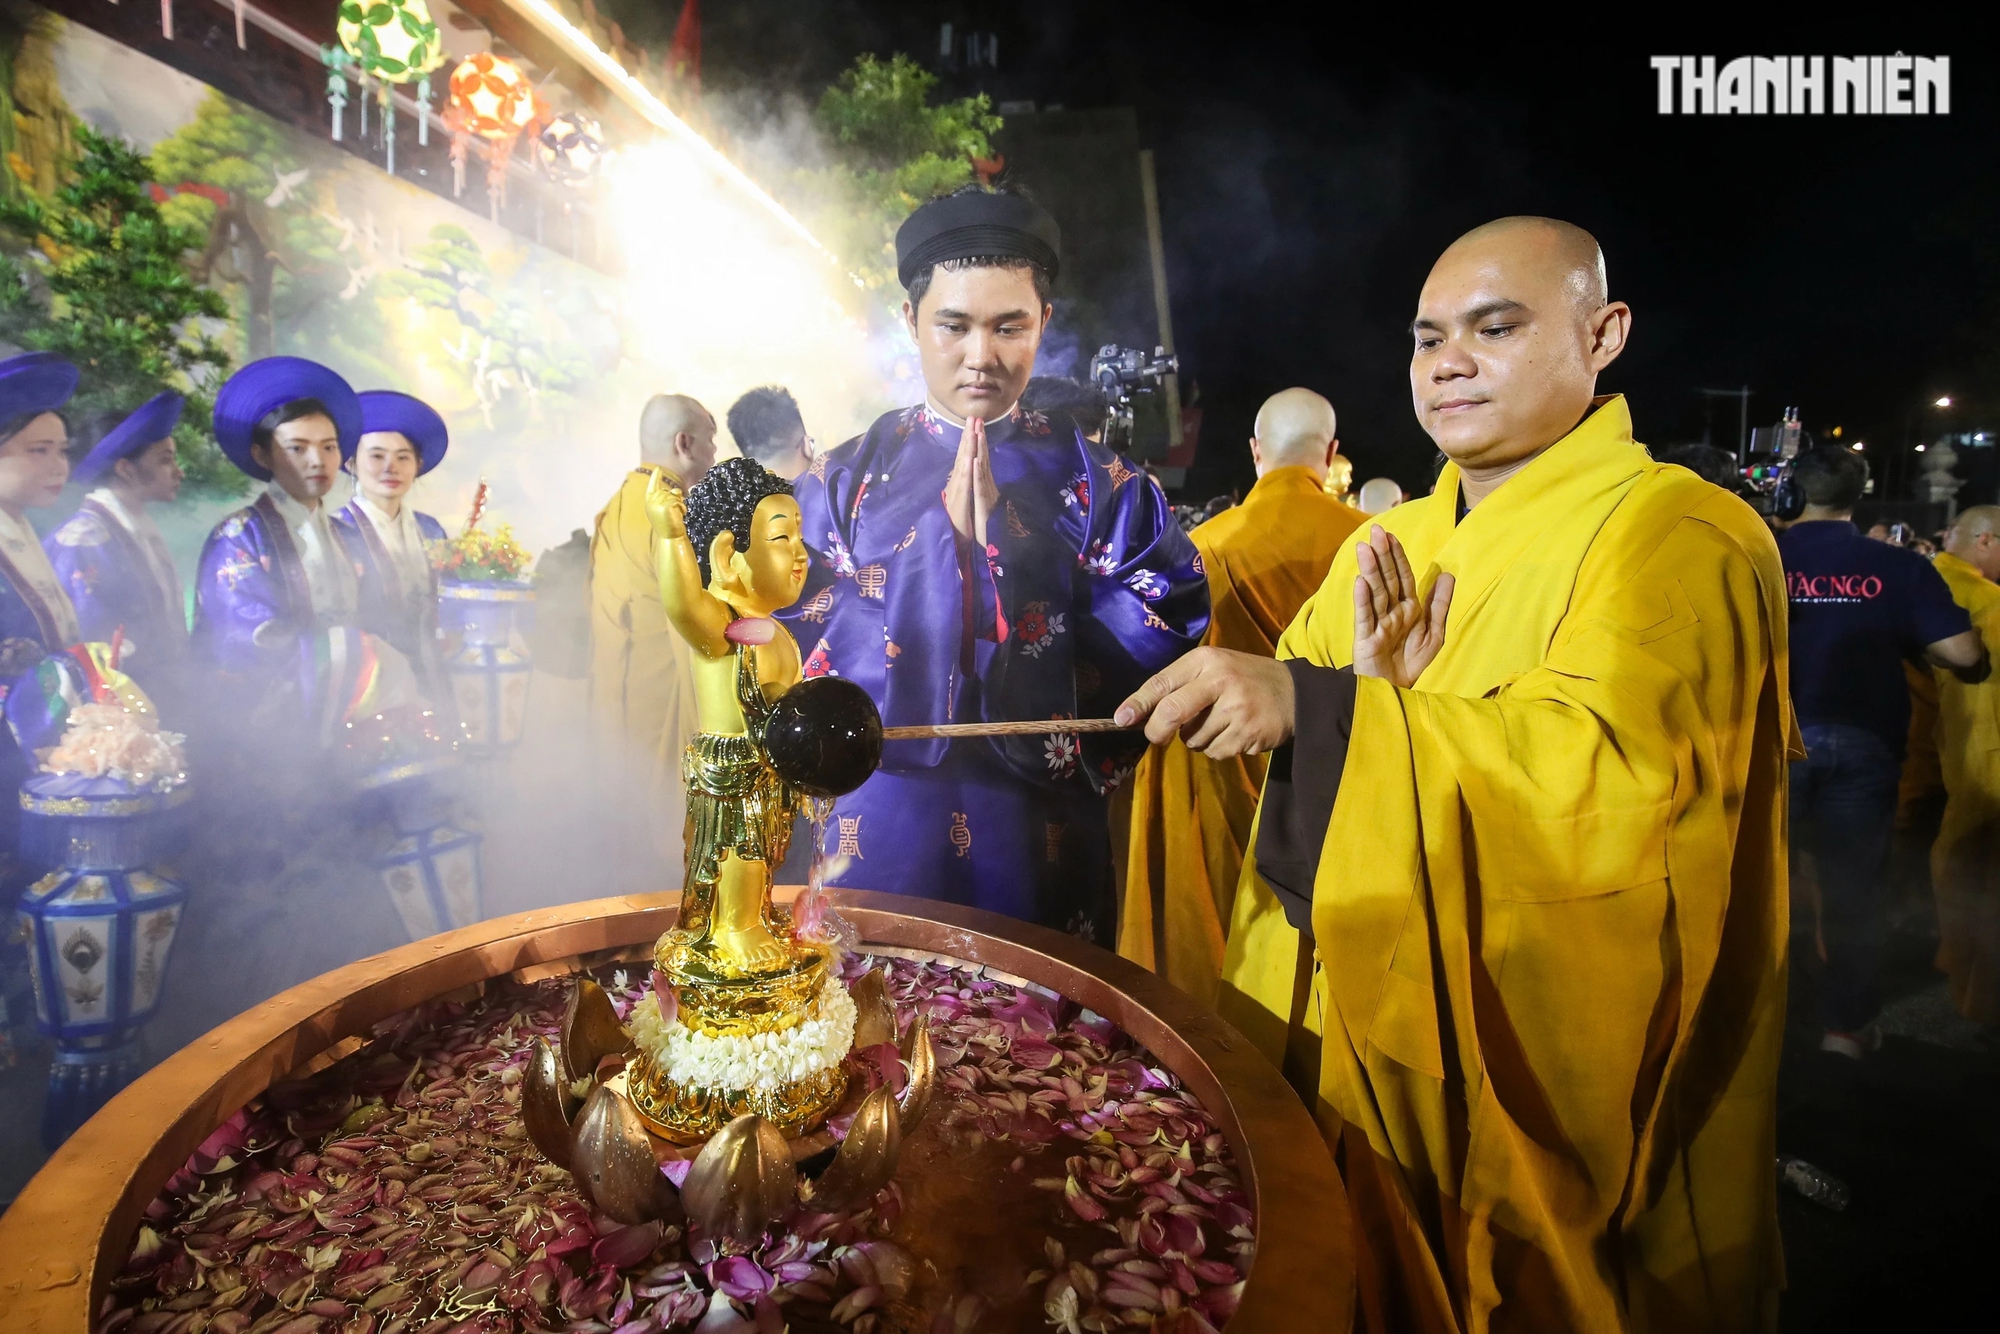 Chư tôn đức Tăng Ni, Phật tử lần lượt cử hành nghi thức Lễ Tắm Phật, mở đầu Tuần lễ Phật đản Phật lịch 2568 tại TP.HCM